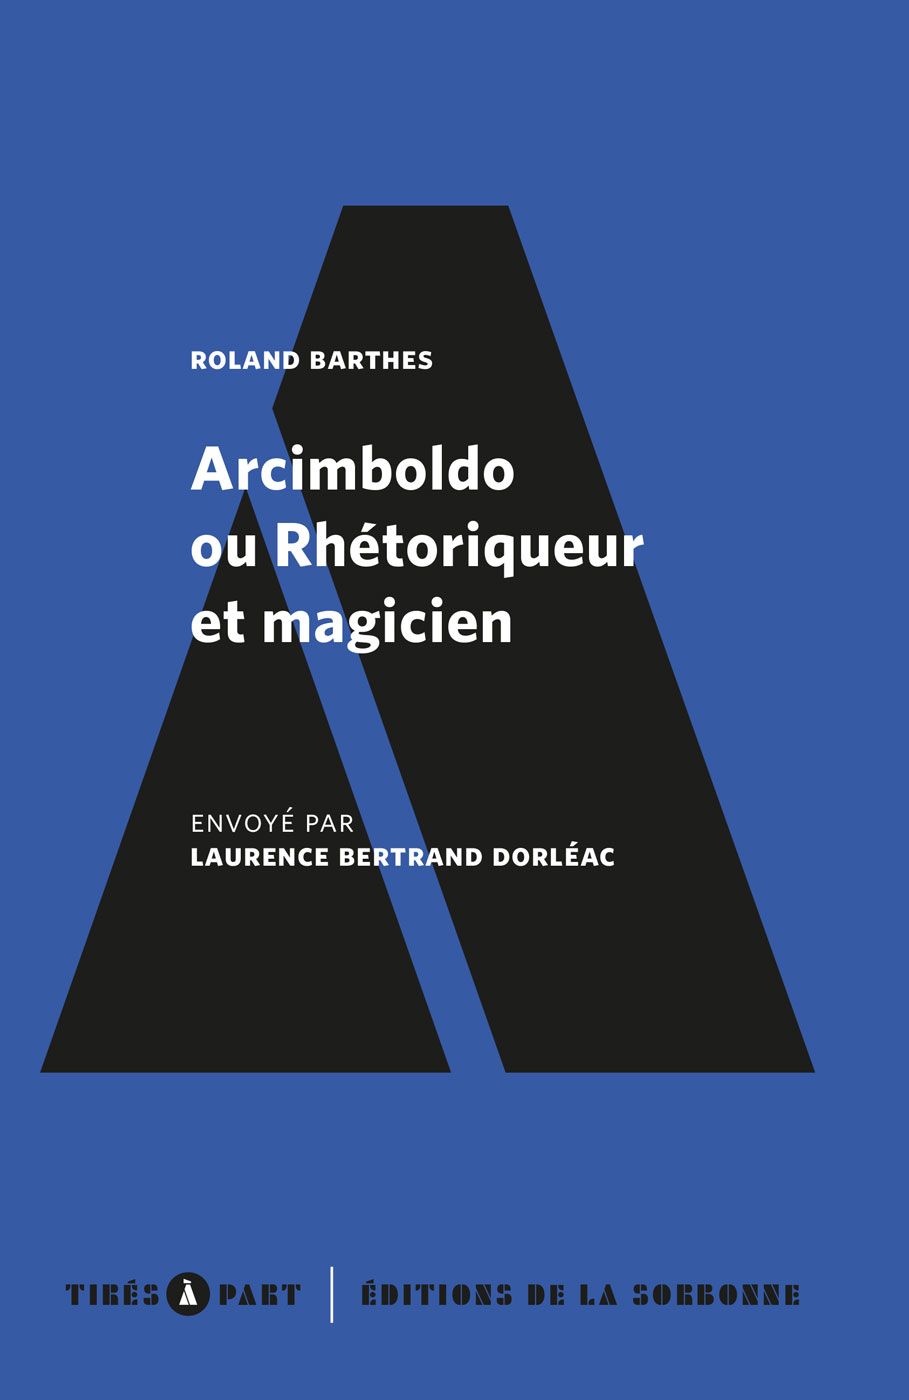 Roland Barthes, Arcimboldo ou Rhétoriqueur et magicien (présentation de Laurence Bertrand Dorléac)